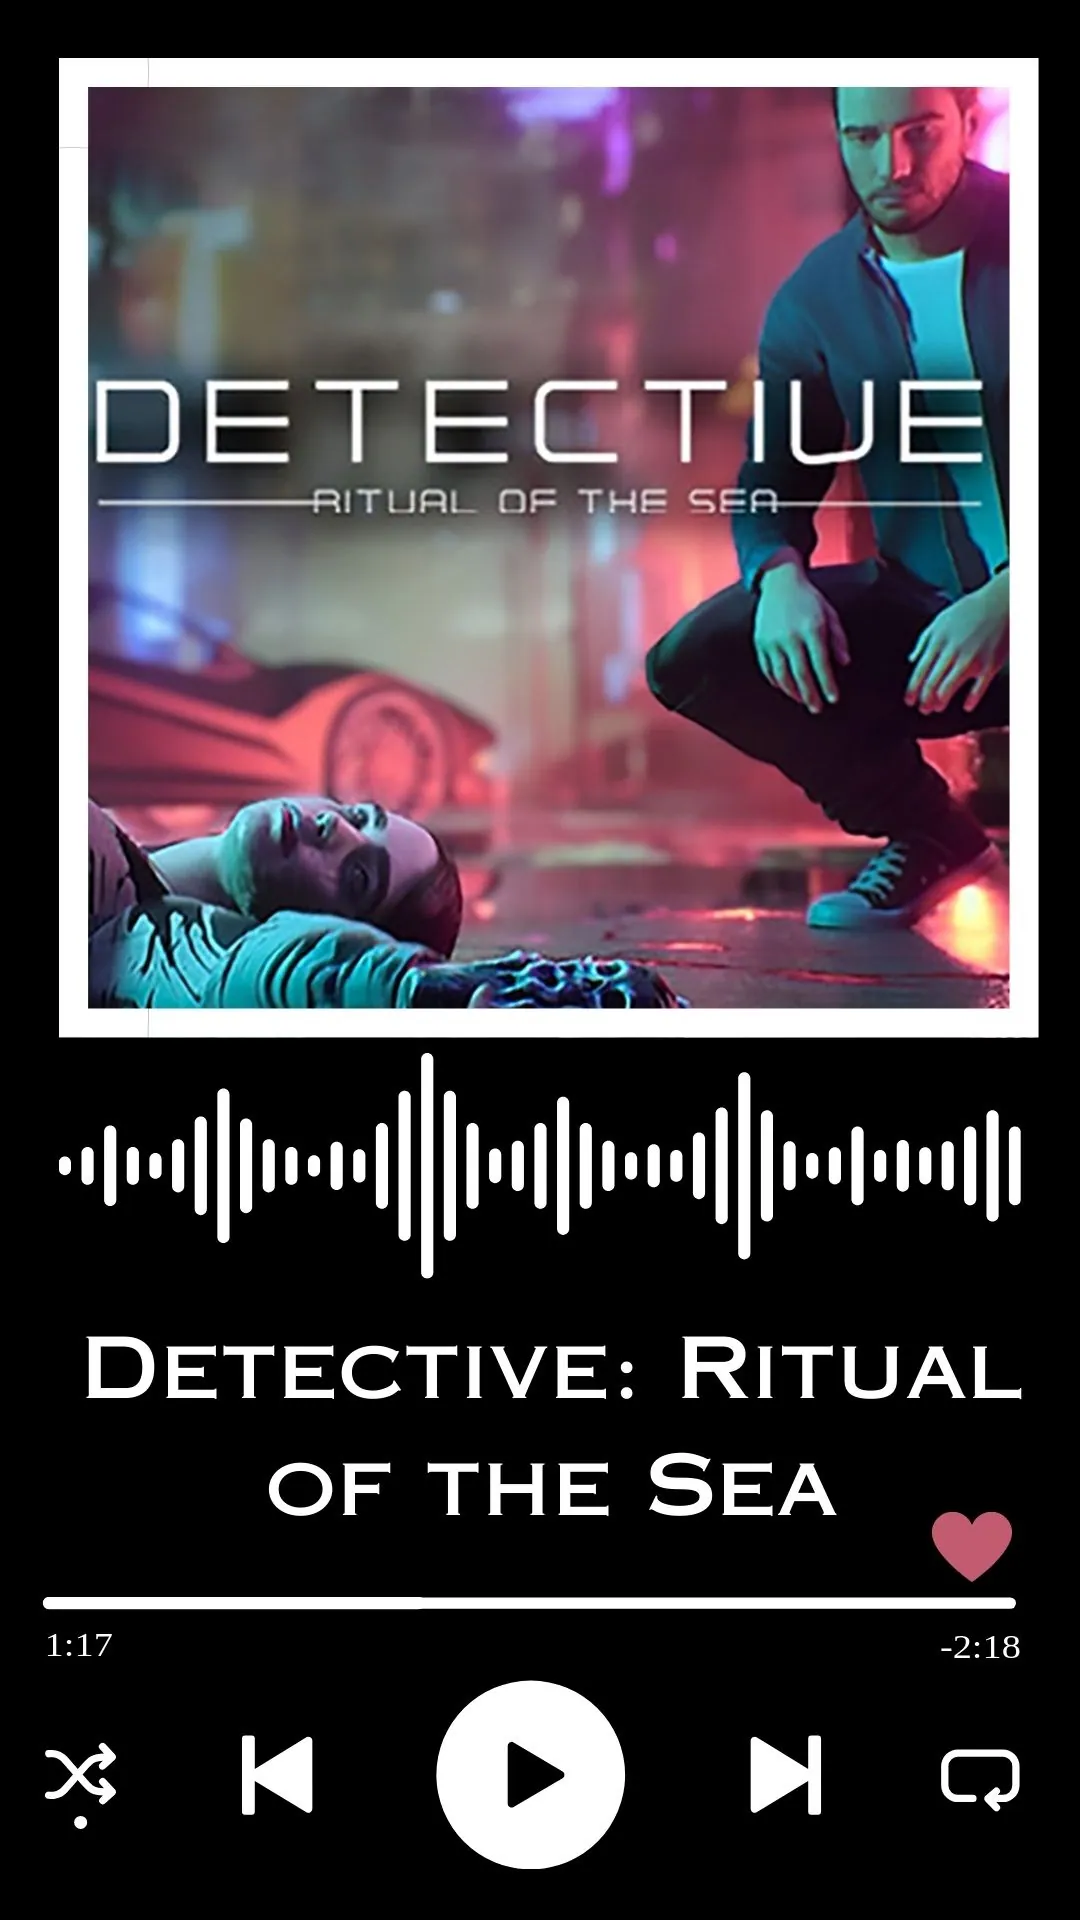 Detective: Ritual of the Sea Soundtrack